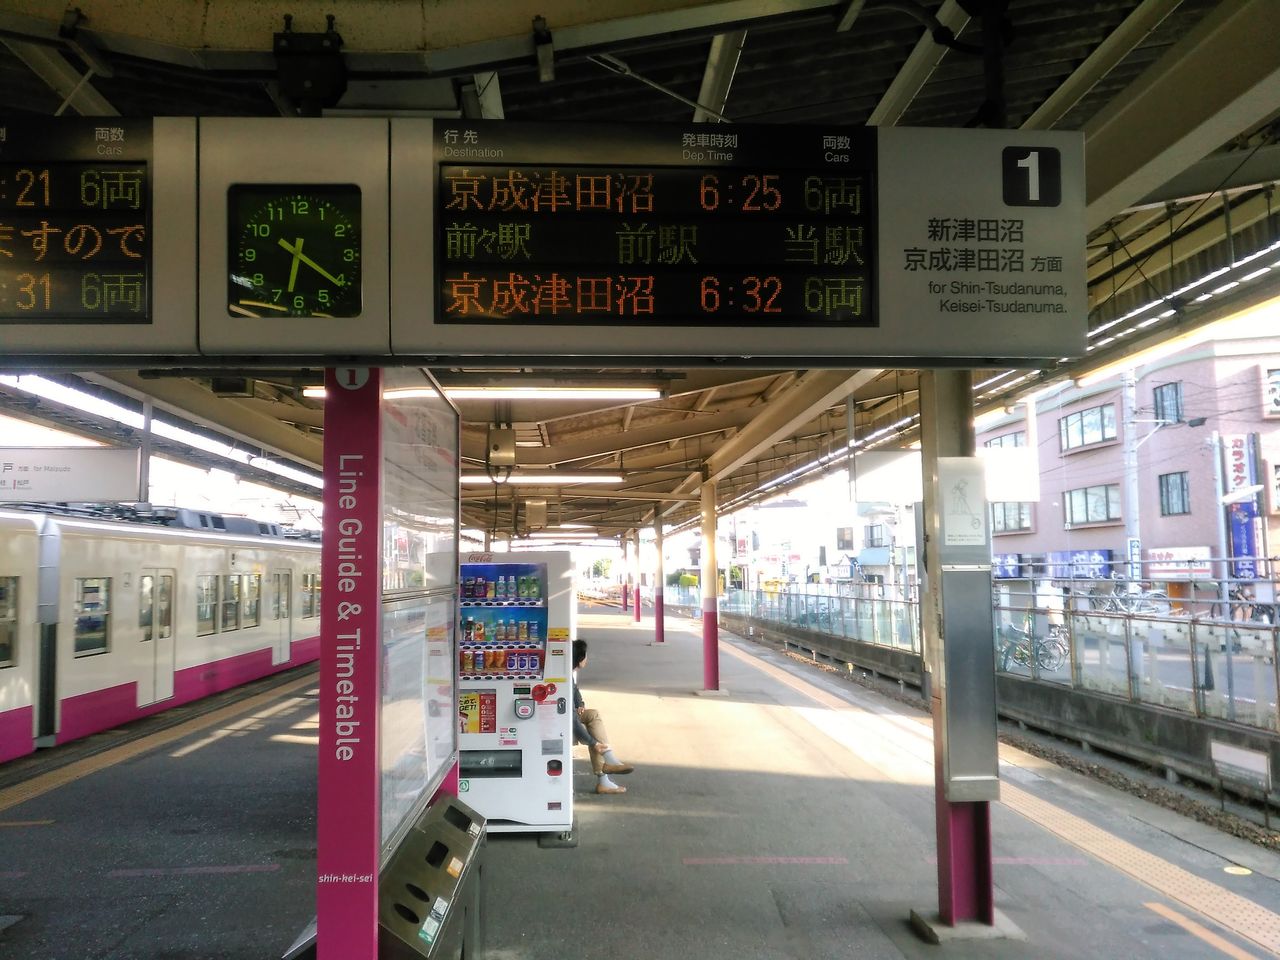 新京成線 その1 全車6両化でいいのか 朝ラッシュ時に乗降観察してきました Shinoの鉄道旅行 ホテル宿泊備忘録